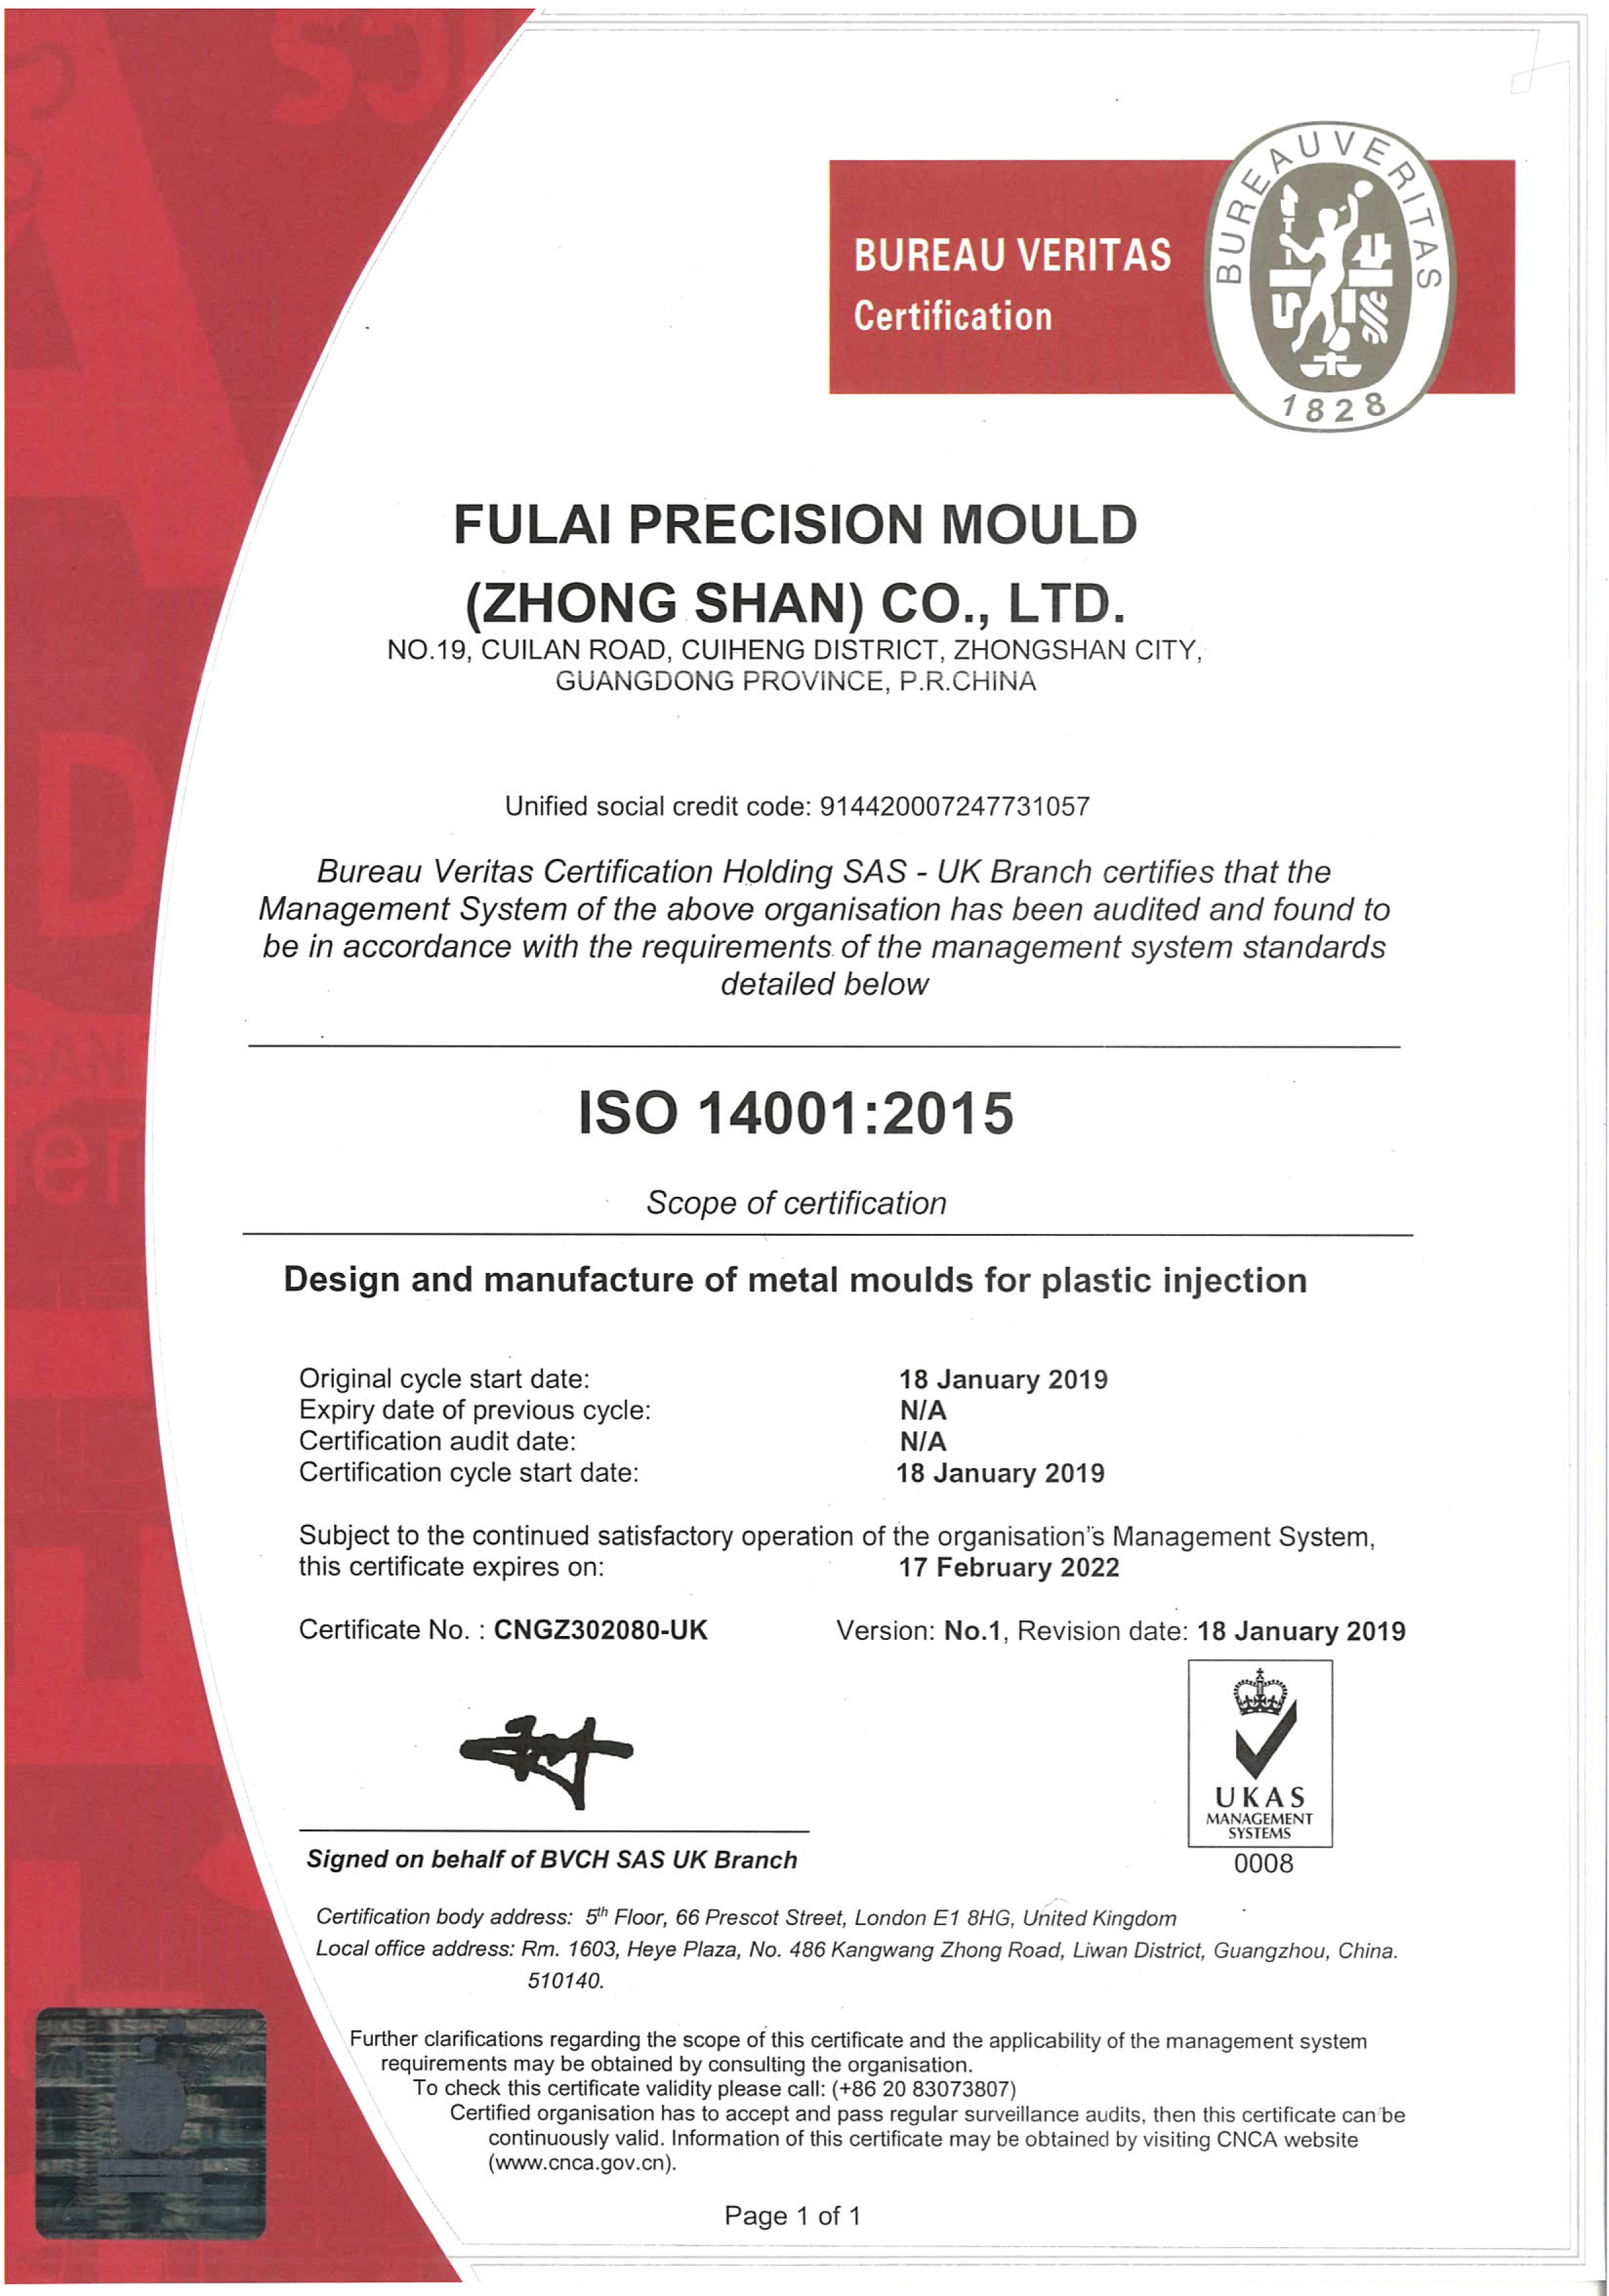 ISO 认证证书